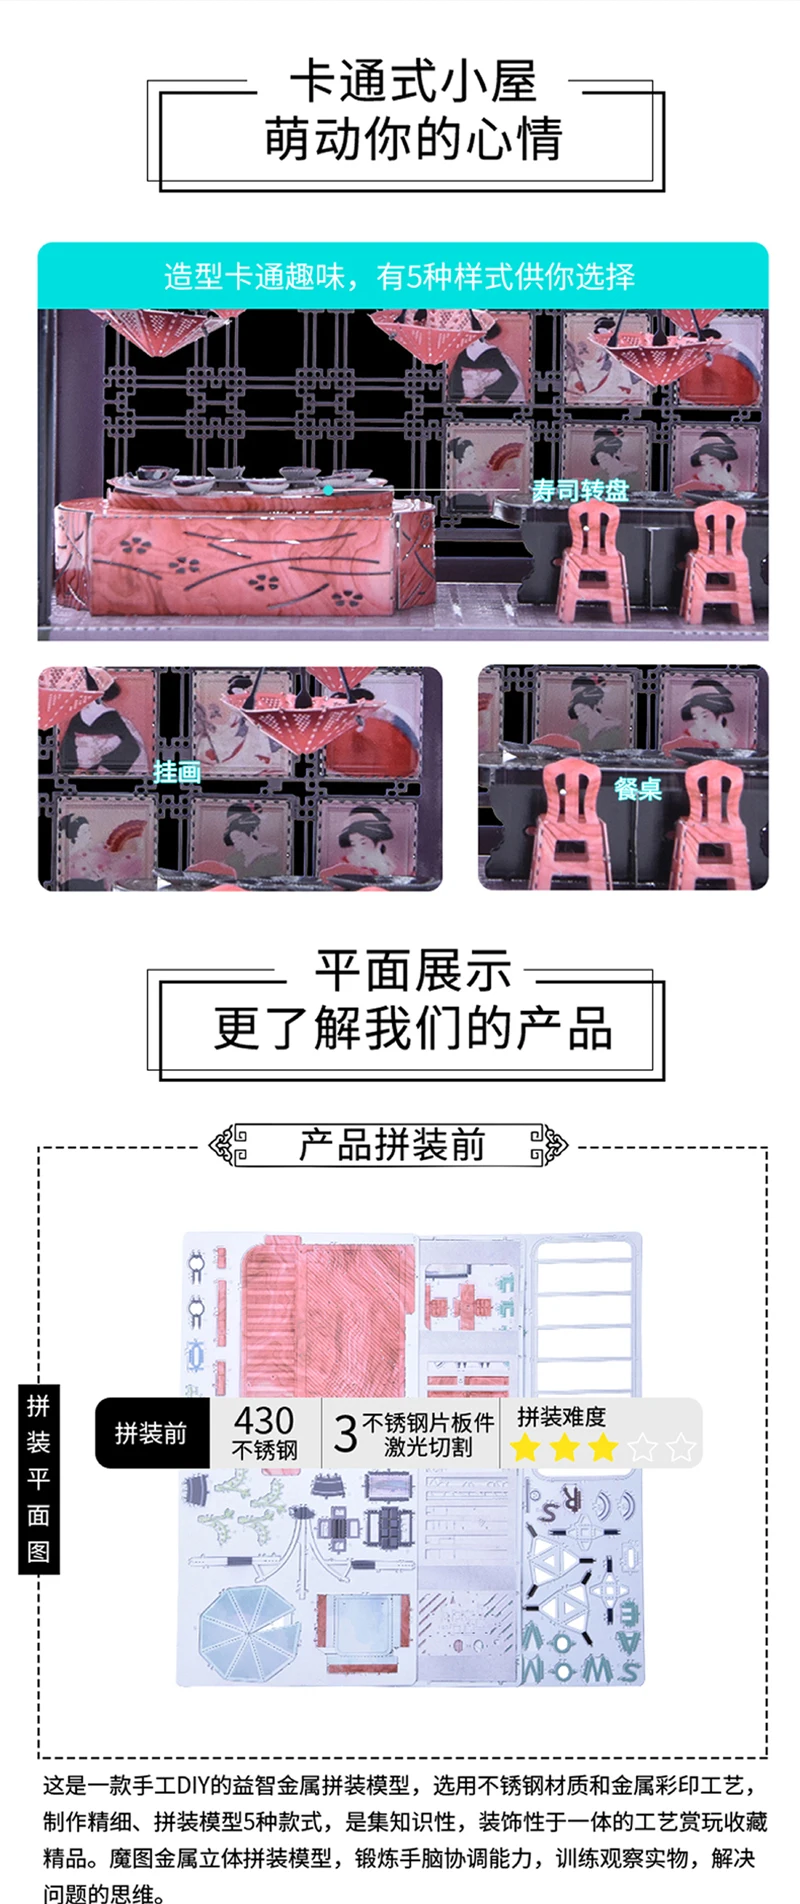 HK Nanyuan 3D металлическая головоломка тема домик Строительная модель образовательная DIY 3D лазерная резка сборка головоломки игрушки подарок для детей